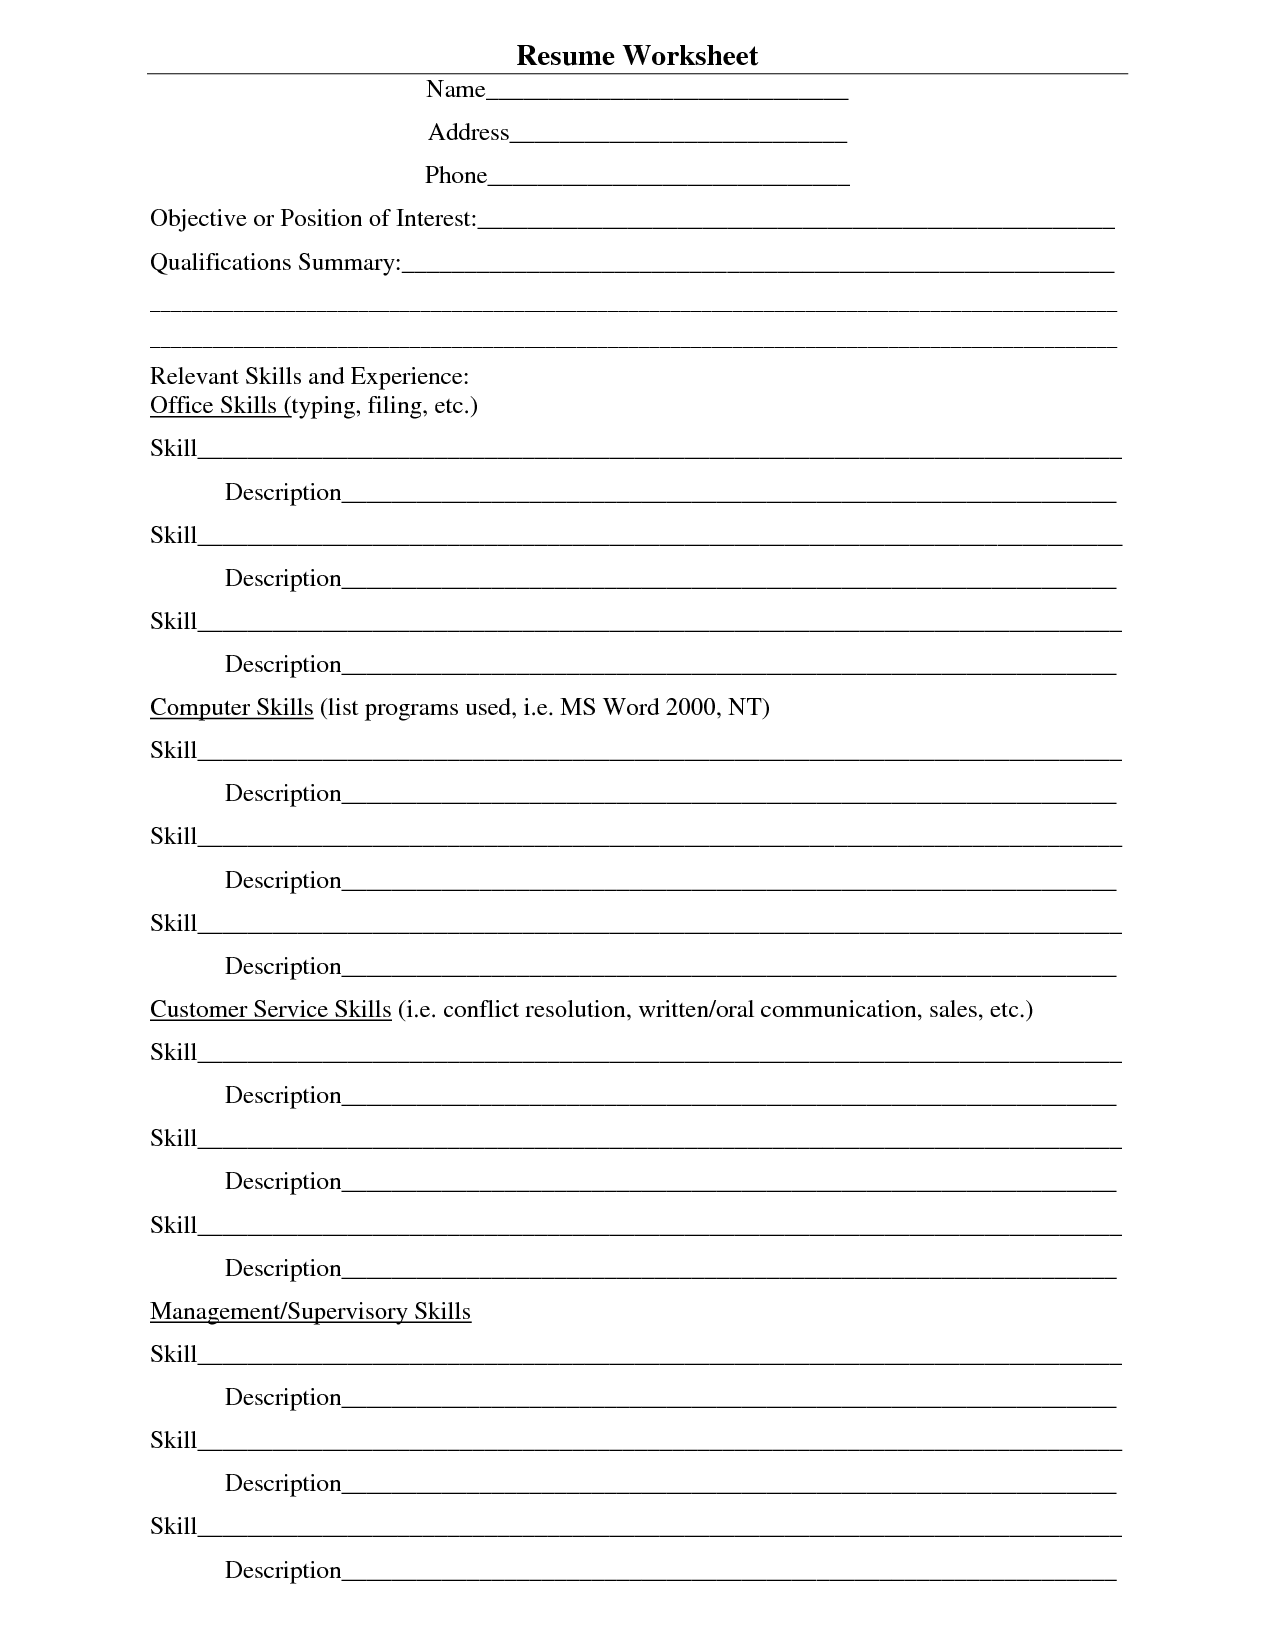 practice resume worksheets